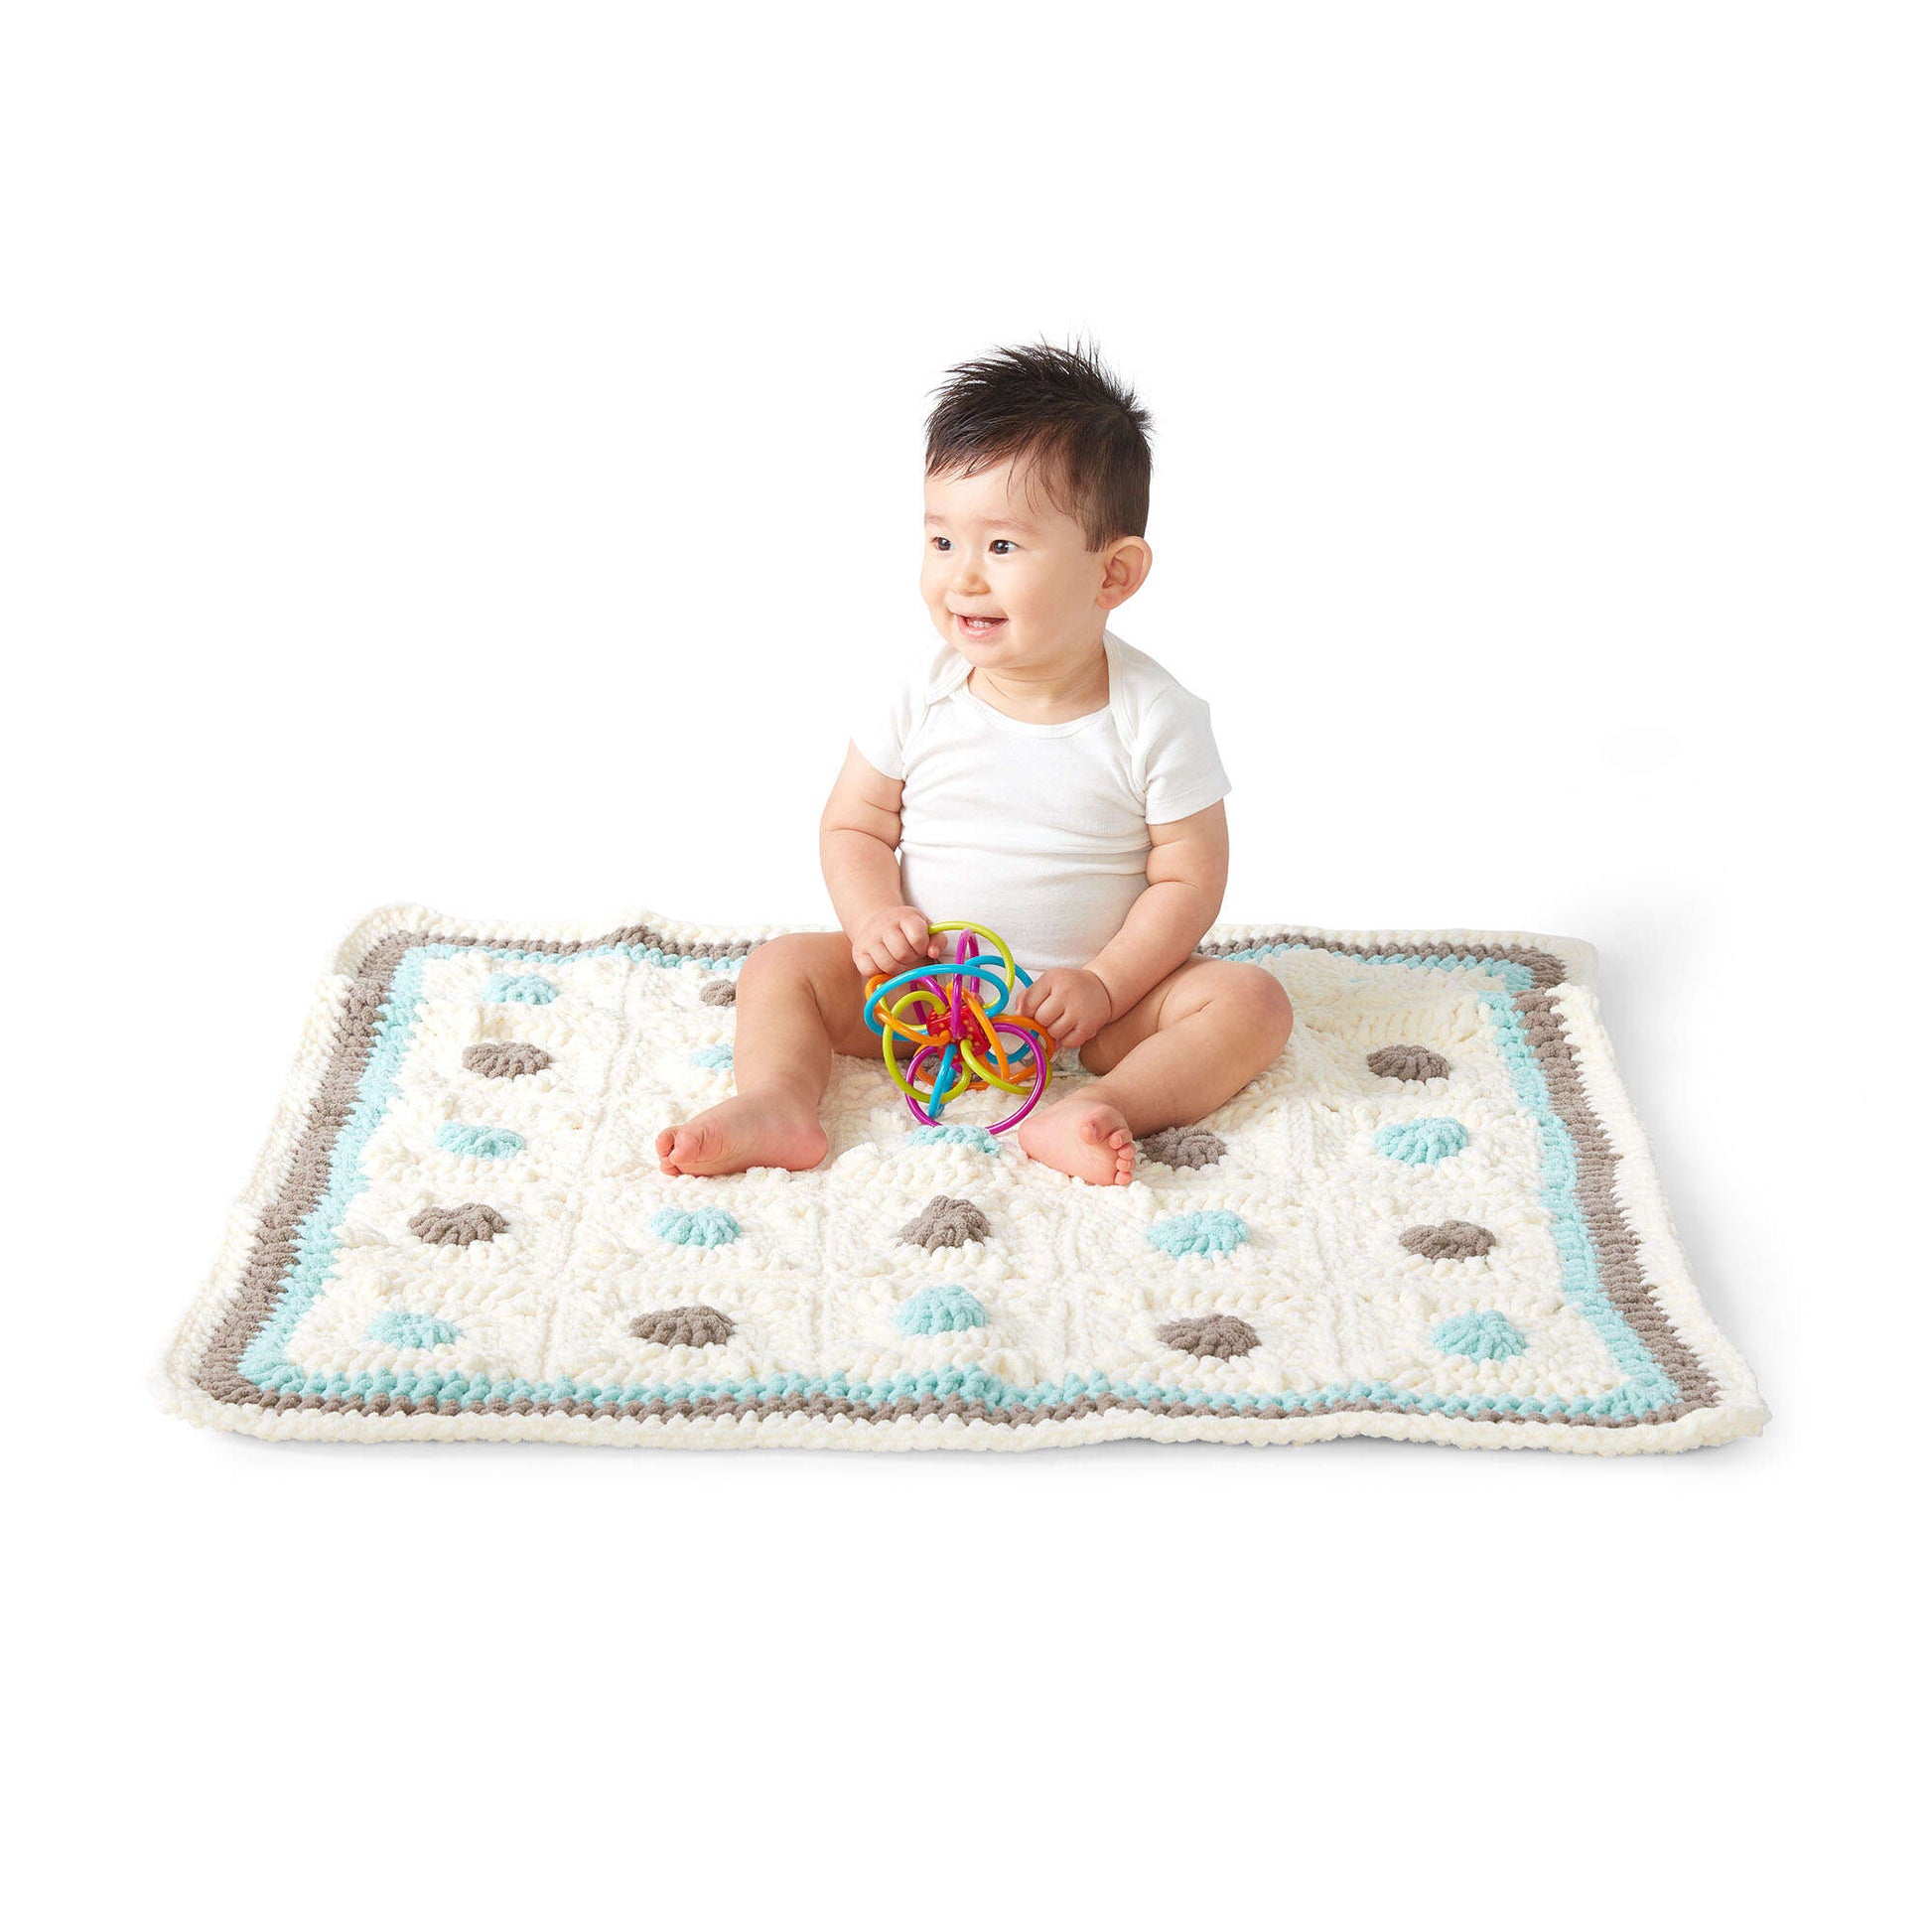 Free Bernat Little Dots Crochet Baby Blanket Pattern